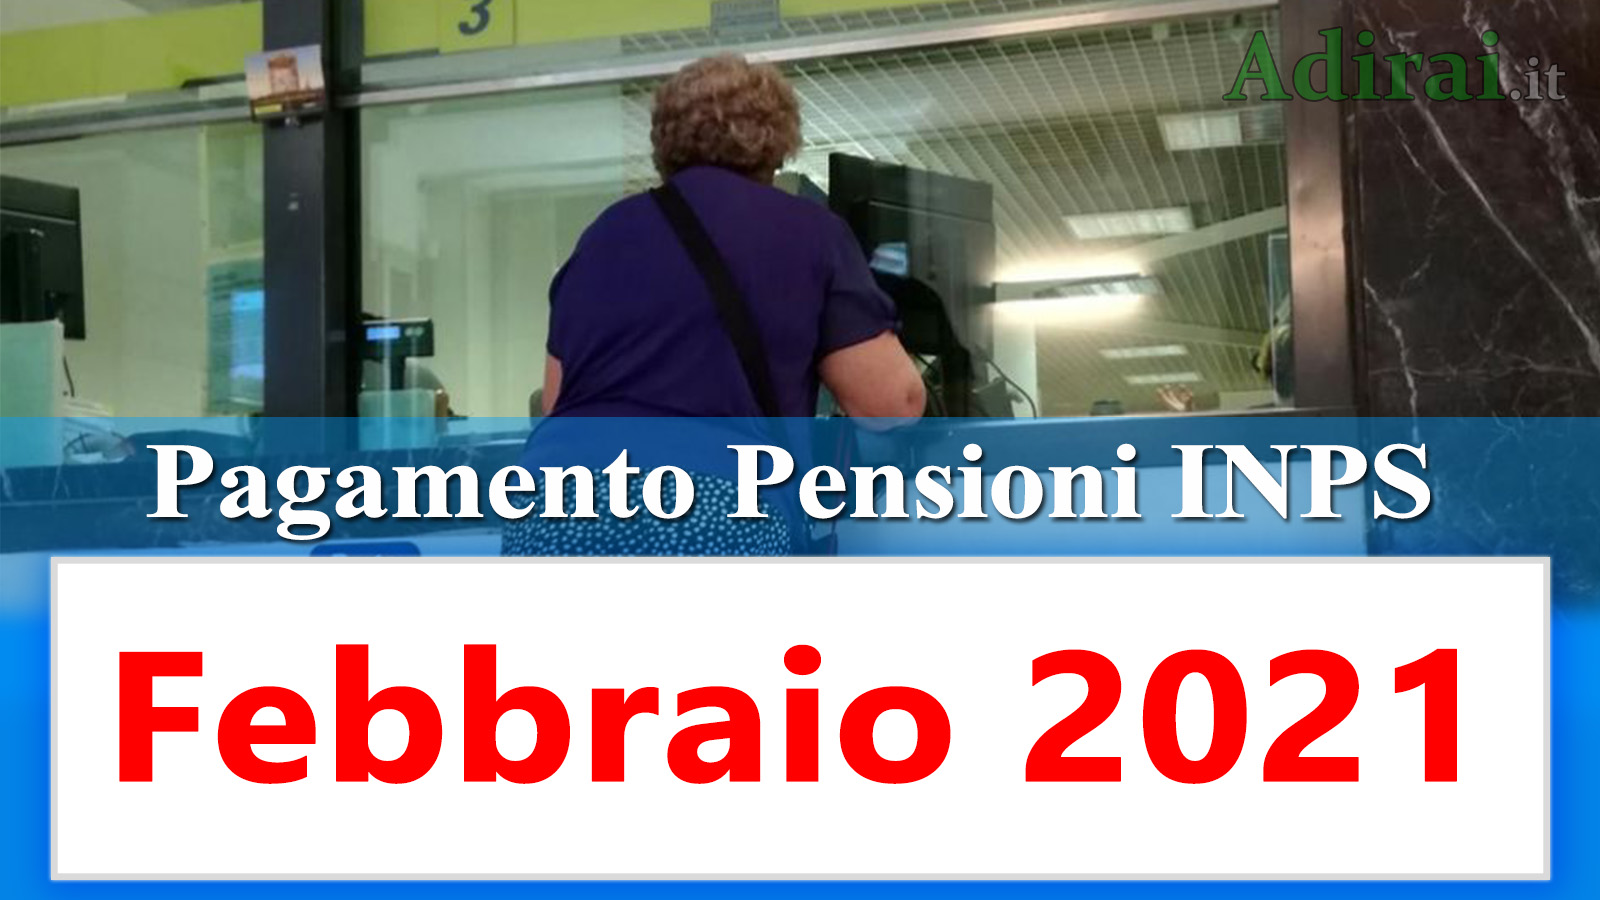 Calendario pagamento pensioni Inps febbraio 2021 in anticipo